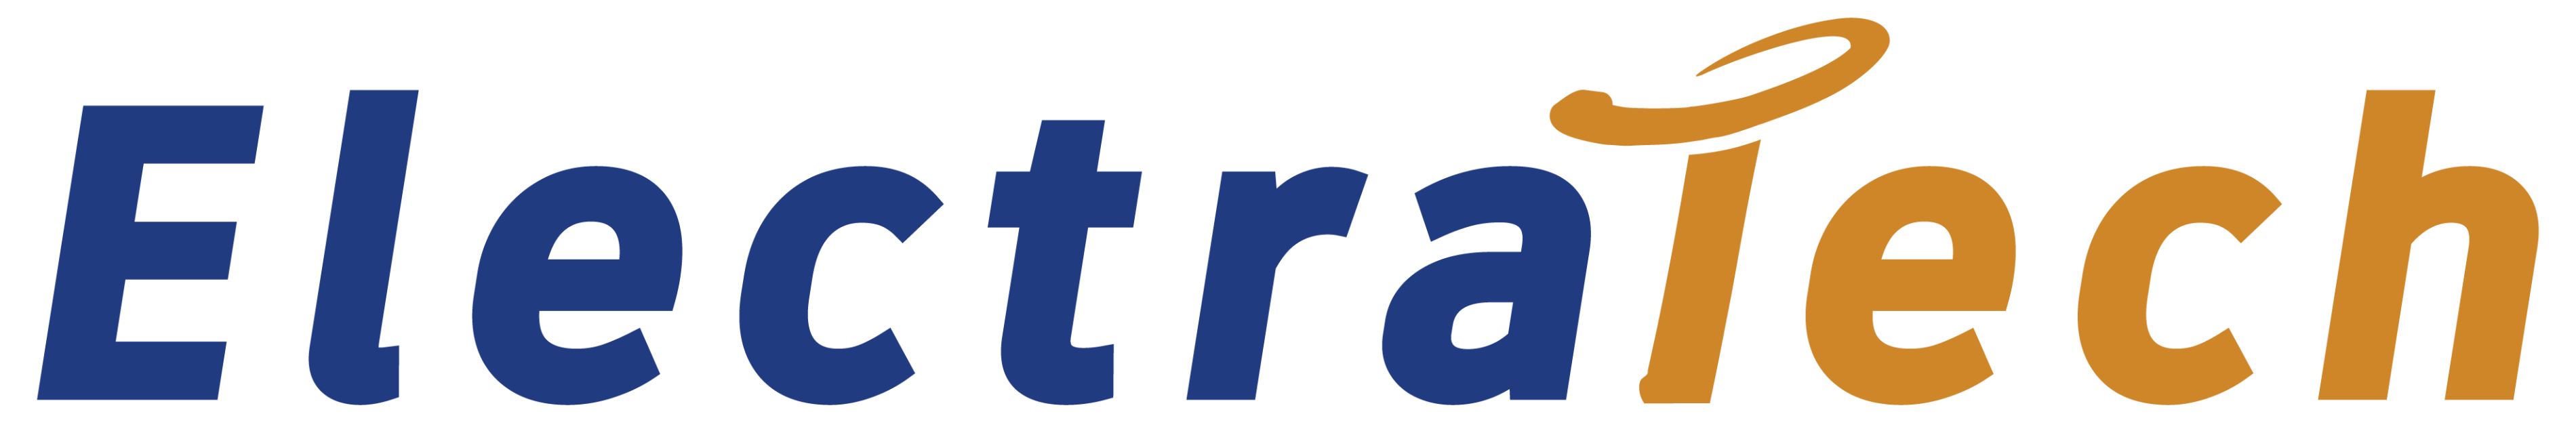 Electra-Tech-High-Res-Logo-01